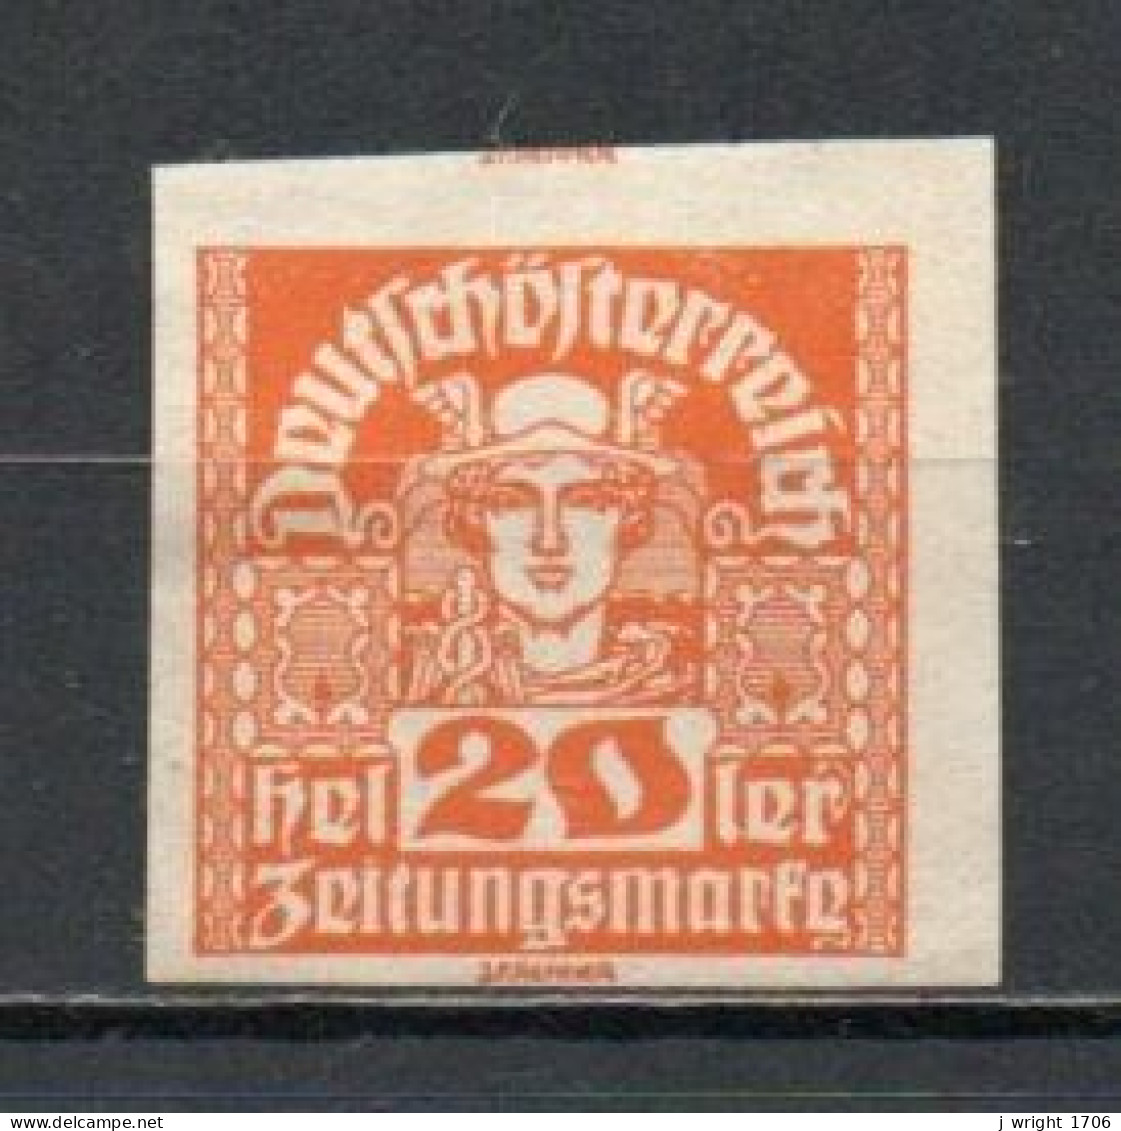 Austria, 1921, Mercury/White Paper, 20h, UNUSED NO GUM - Journaux